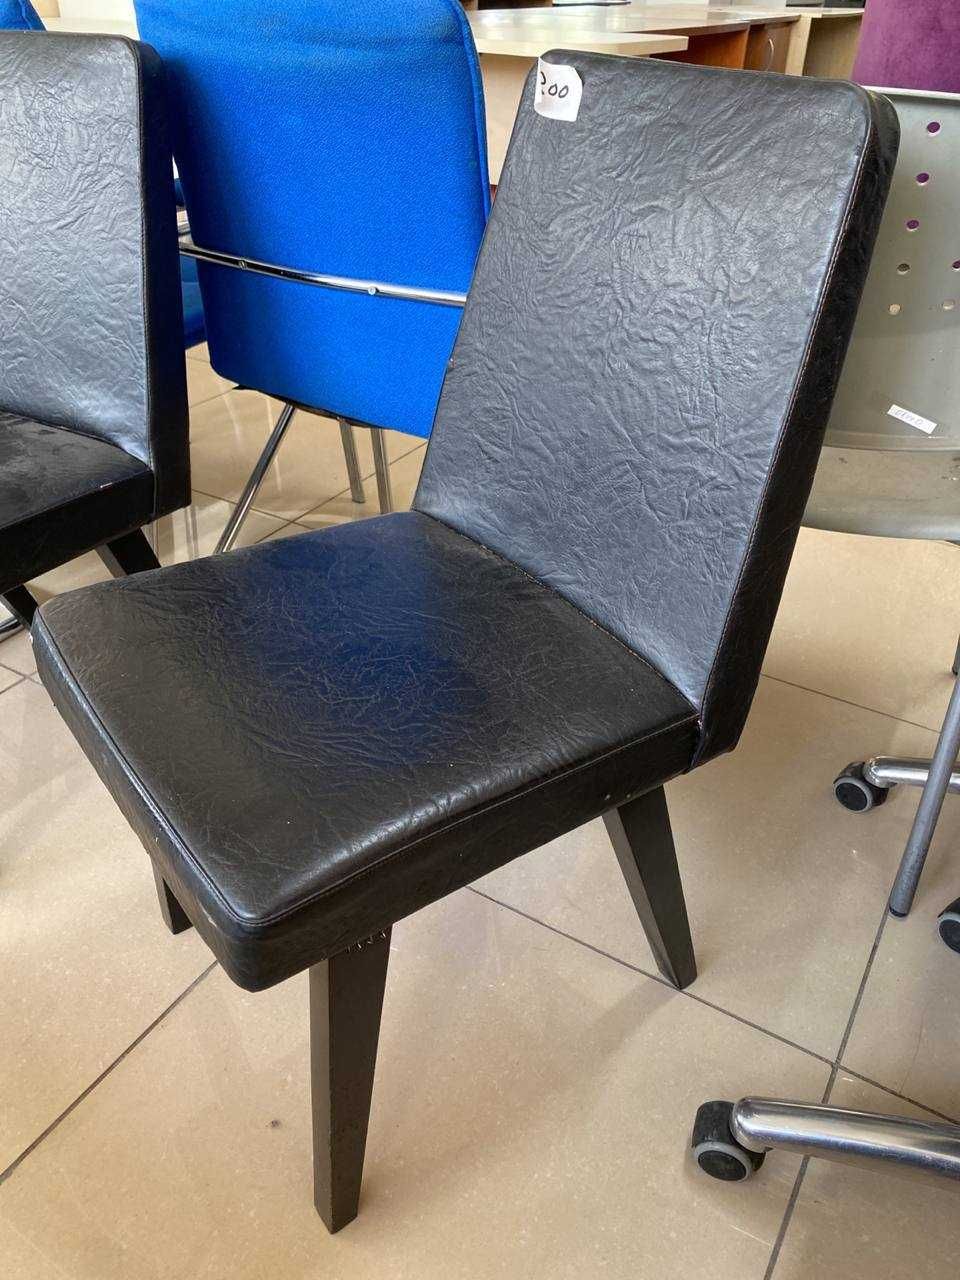 РОЗПРОДАЖ офісної меблі стільці крісла для роботи та навчання